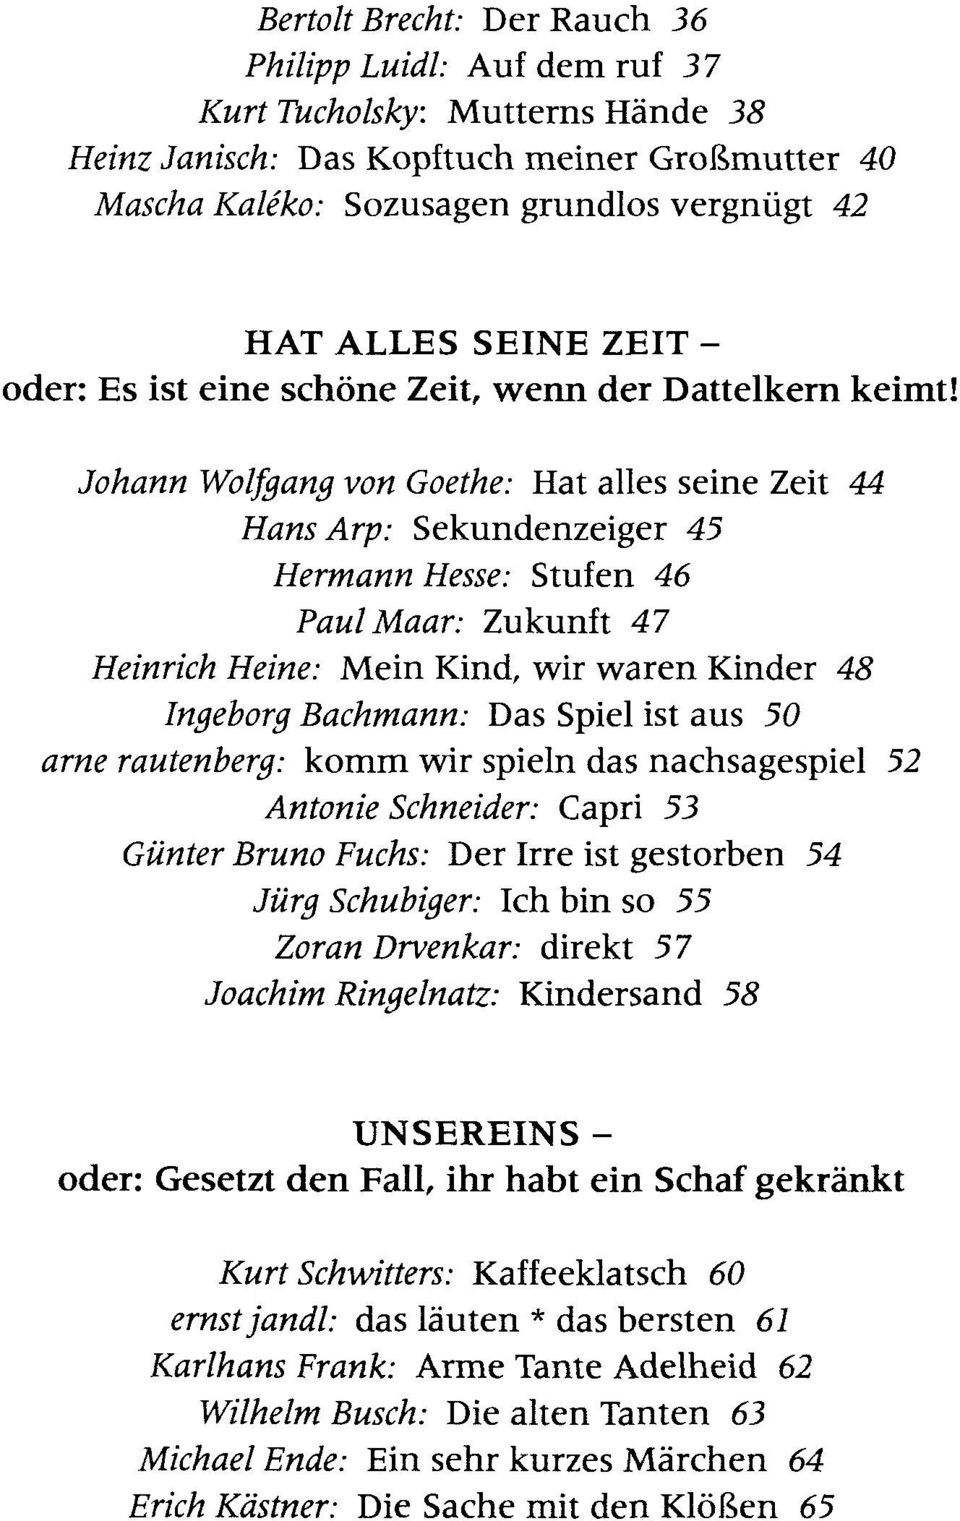 Johann Wolfgang von Goethe: Hat alles seine Zeit 44 Hans Arp: Sekundenzeiger 45 Hermann Hesse: Stufen 46 Paul Maar: Zukunft 47 Heinrich Heine: Mein Kind, wir waren Kinder 48 Ingeborg Bachmann: Das